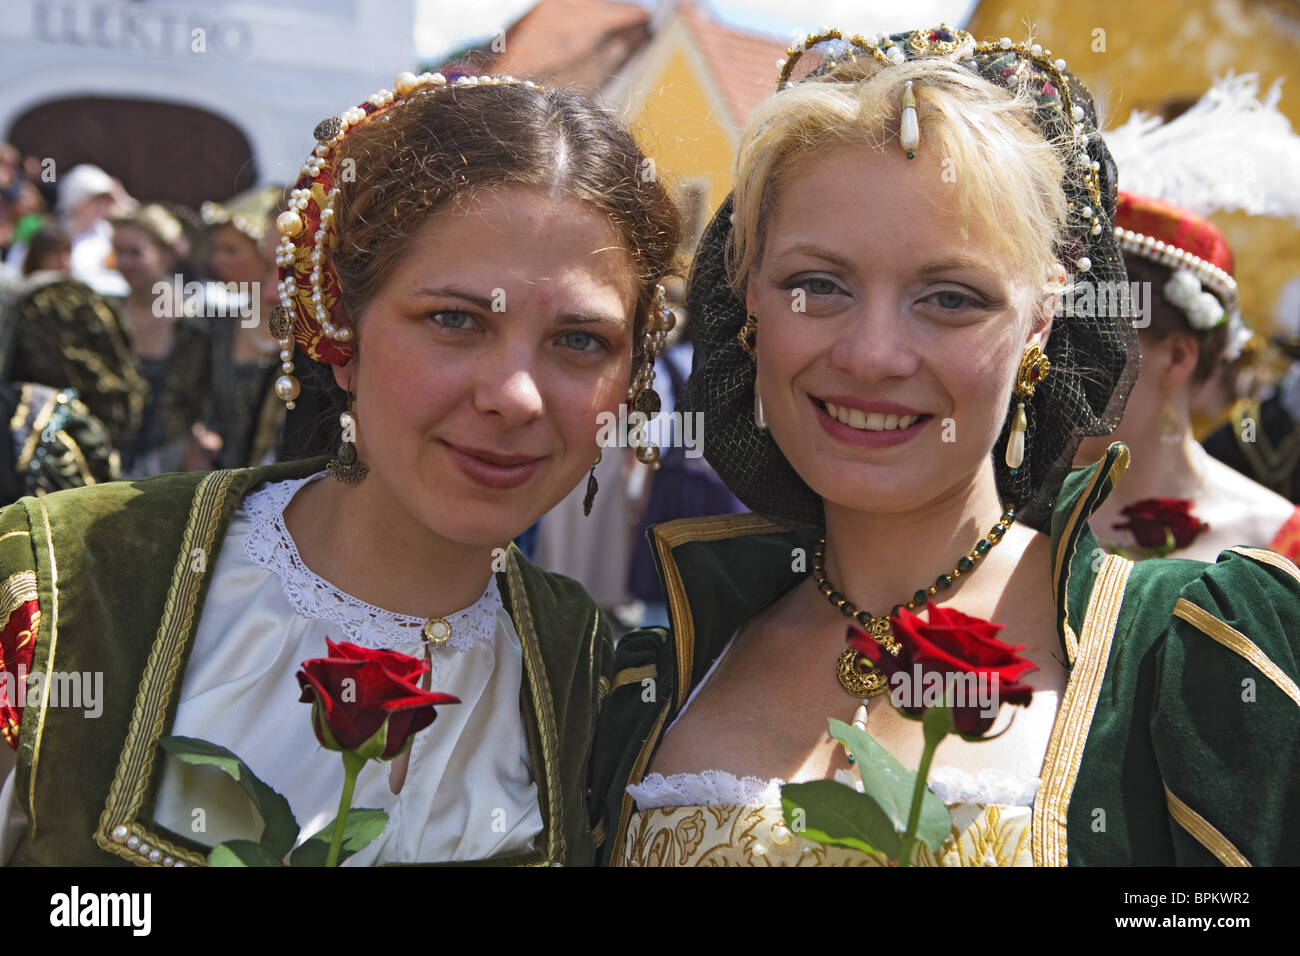 Mittelalterliches Fest der fünfblättrigen Rose, Cesky Krumlov, South  Bohemian Region, Tschechische Republik Stockfotografie - Alamy